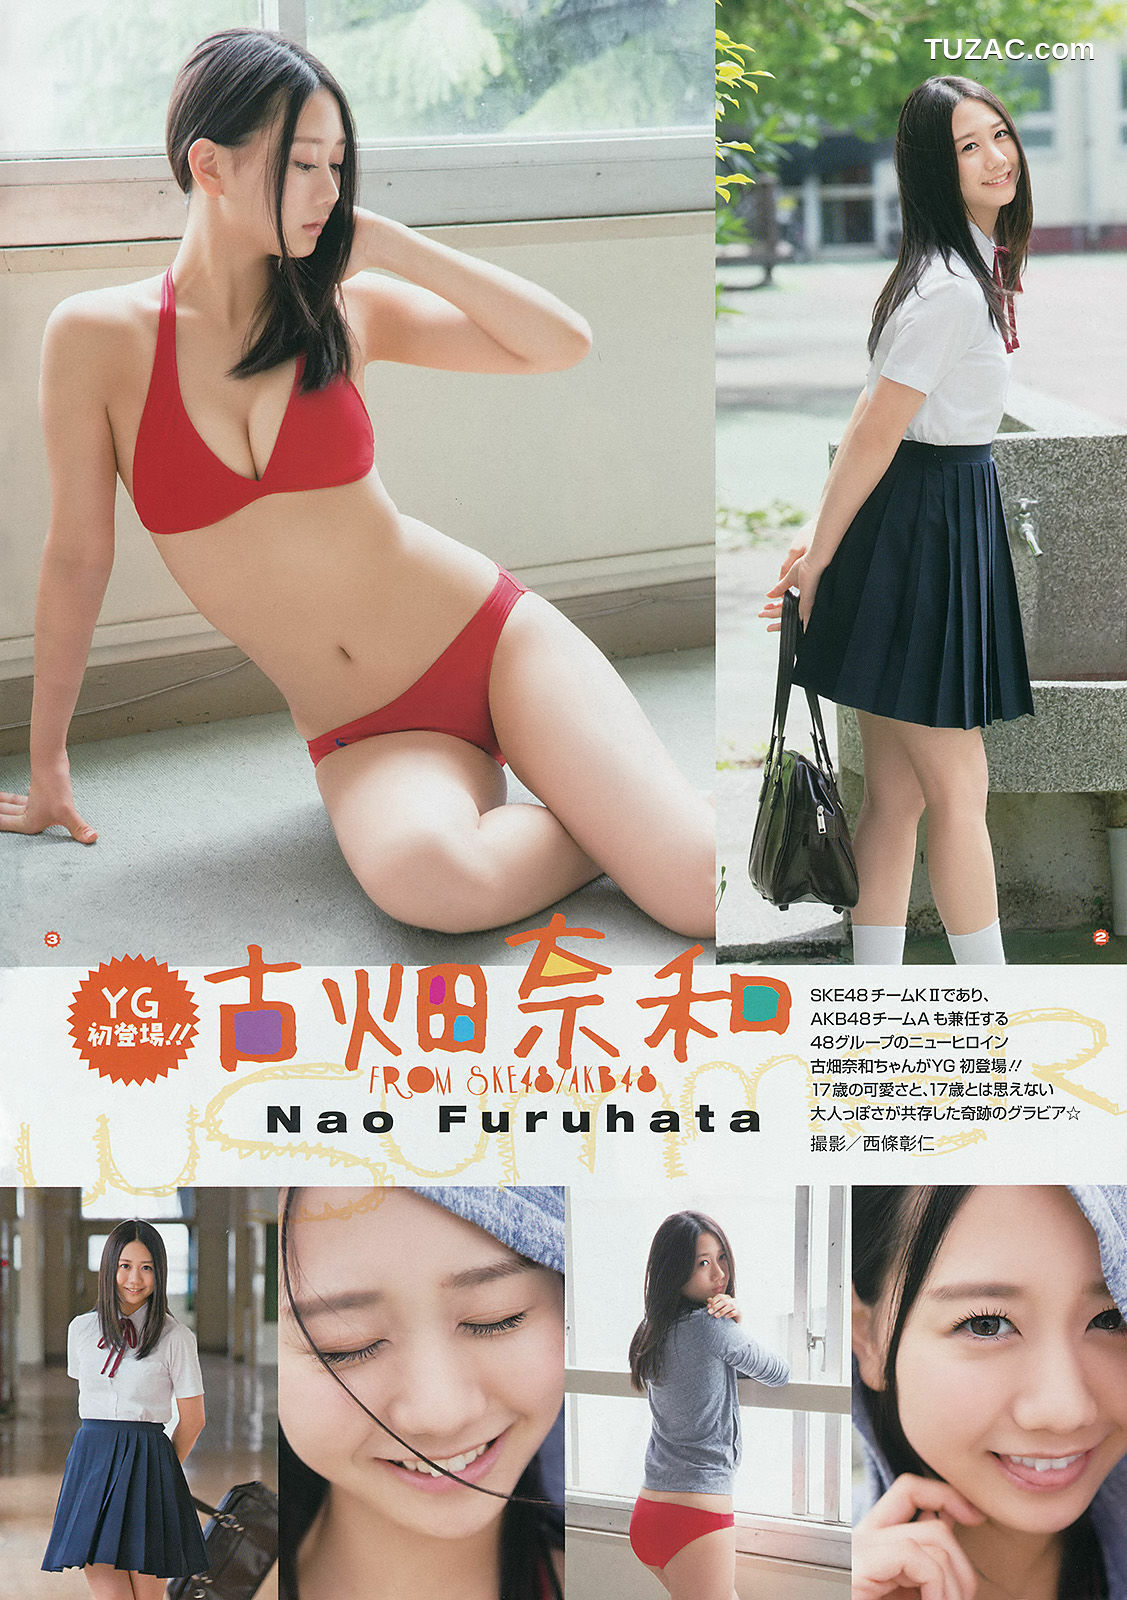 Young Gangan杂志写真_ 古畑奈和 X21 山地まり 2014年No.15 写真杂志[25P]